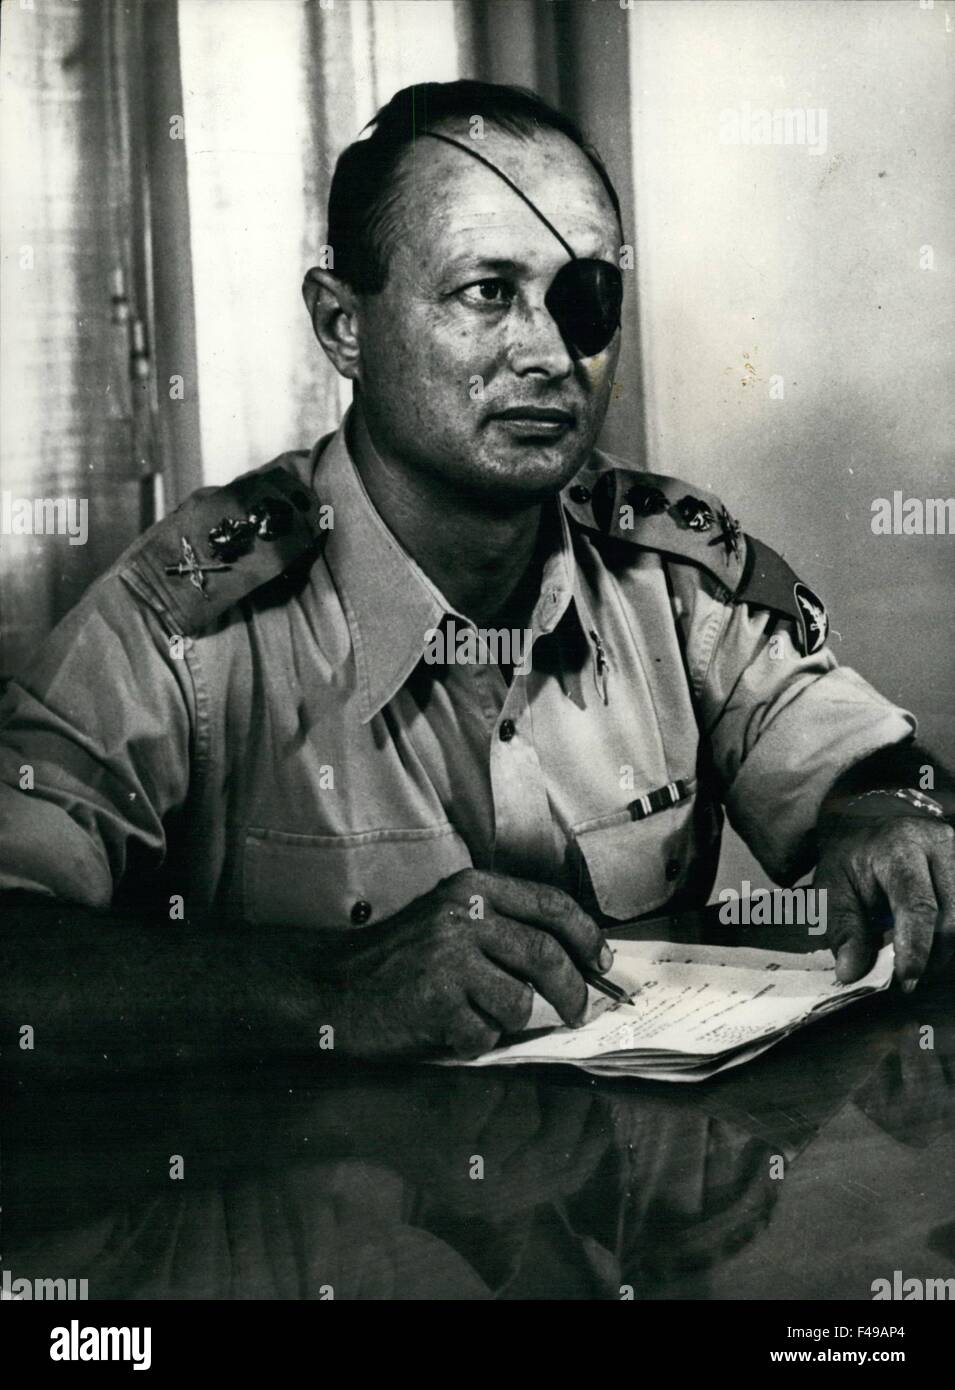 1972 - il generale Moshe Dayan, capo del personale di Israele la fotografato nel suo ufficio. © Keystone Pictures USA/ZUMAPRESS.com/Alamy Live News Foto Stock